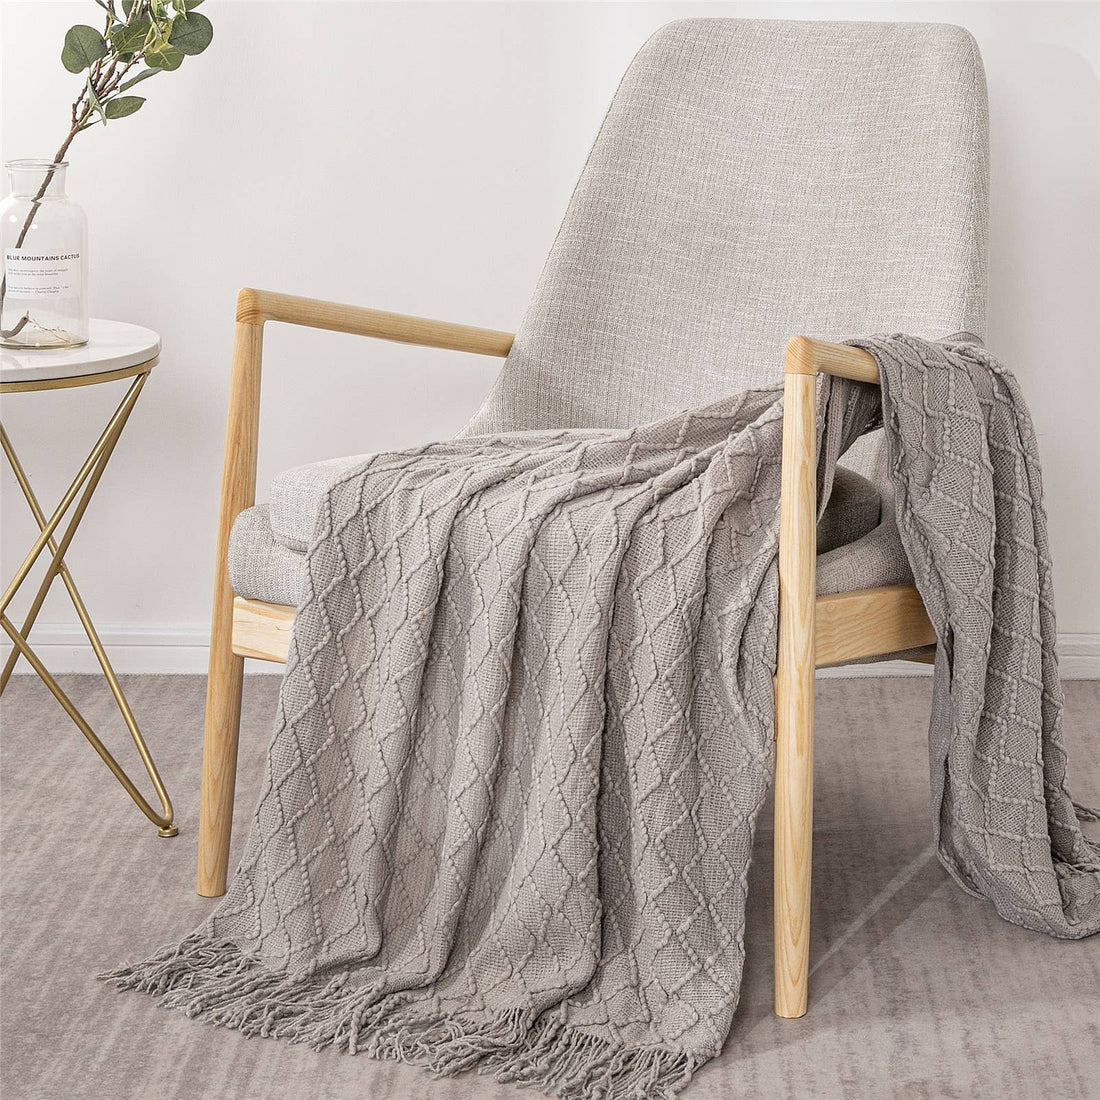 Textured Wavy Design 50x60 Inch Throw Blanket: Khaki